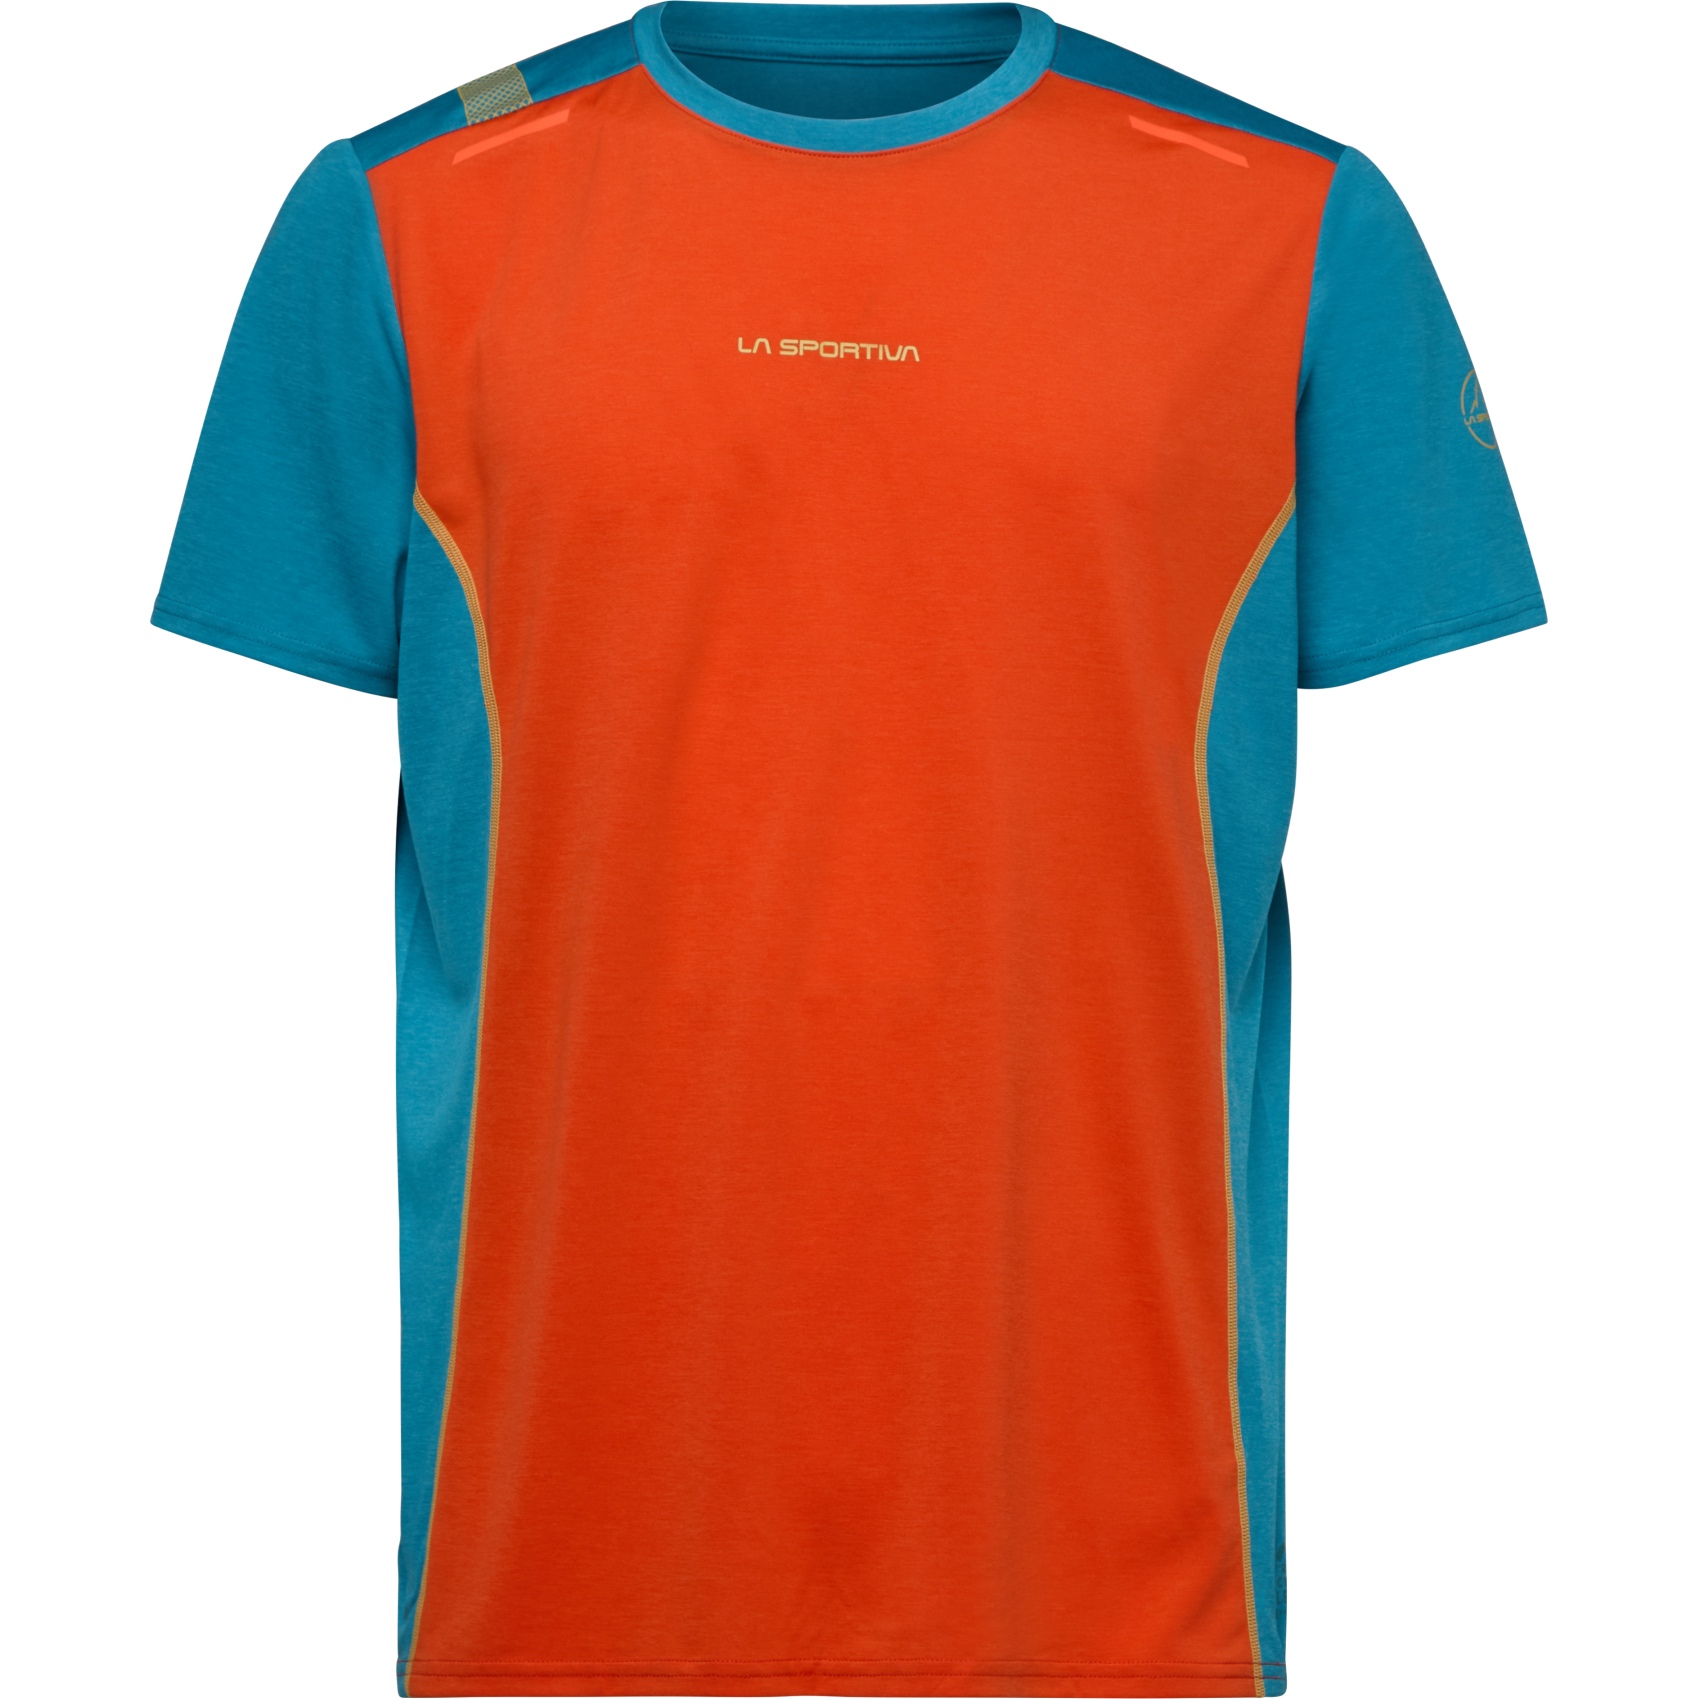 Produktbild von La Sportiva Tracer T-Shirt Herren - Cherry Tomato/Tropic Blue